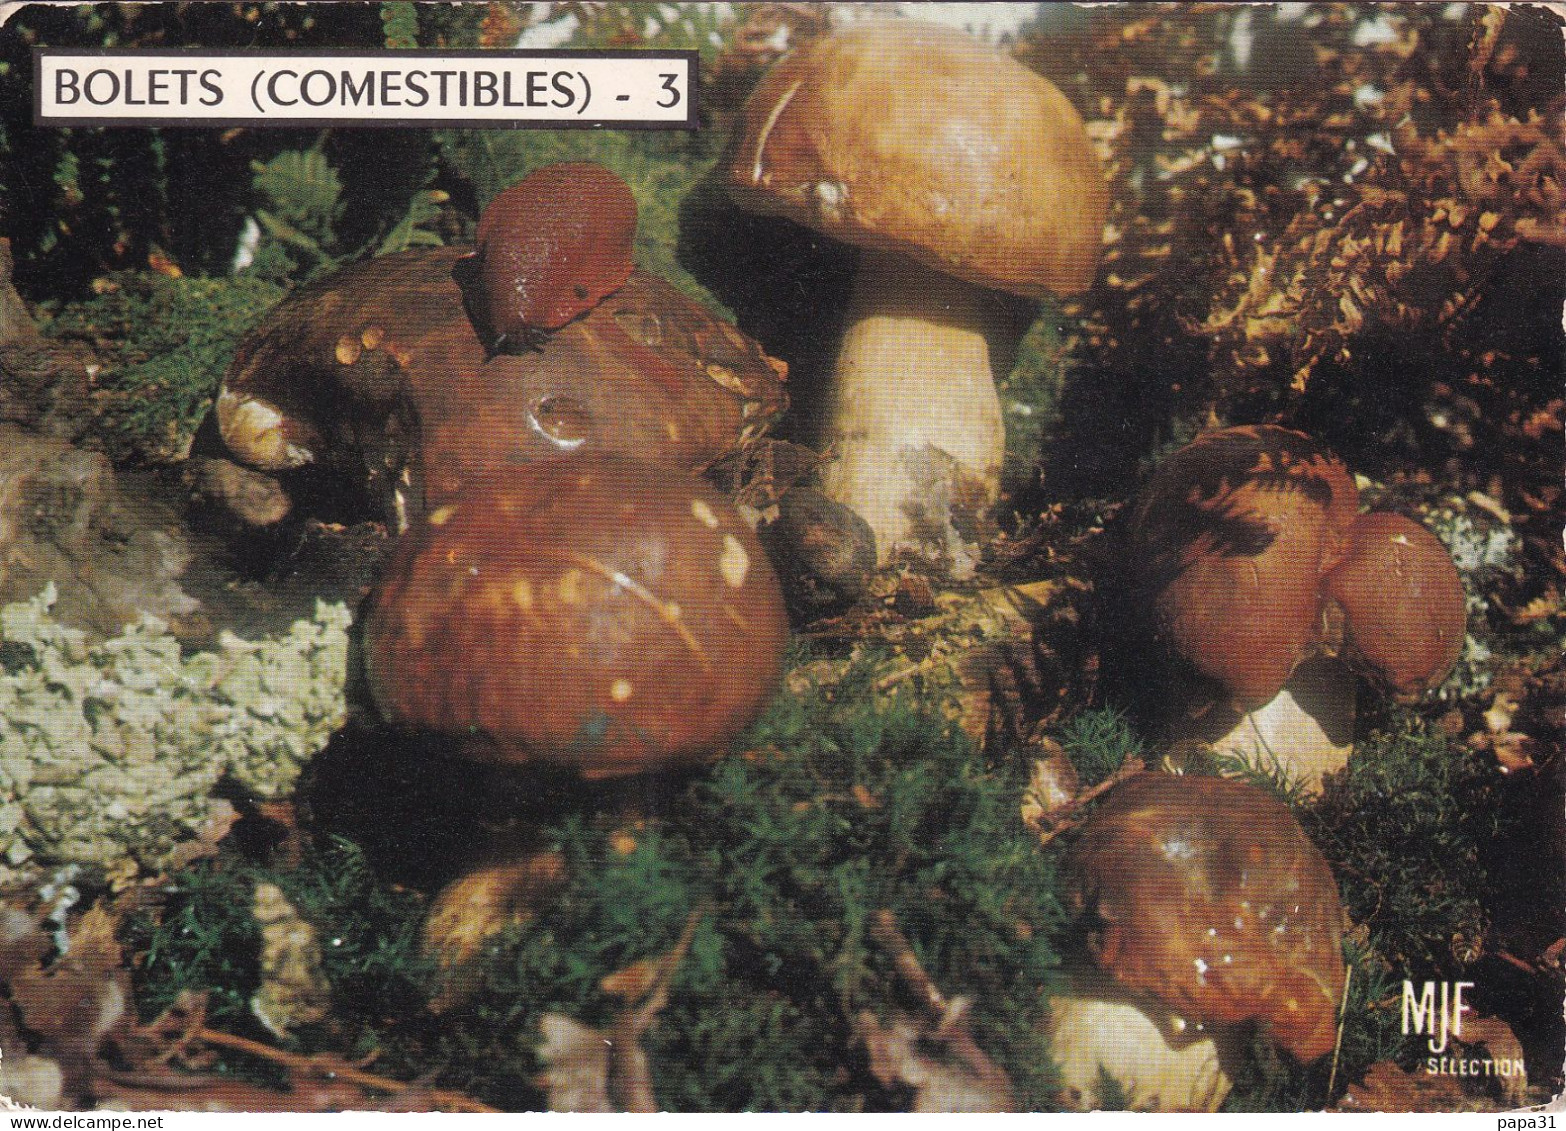 BOLETS (Comestibles) - Funghi